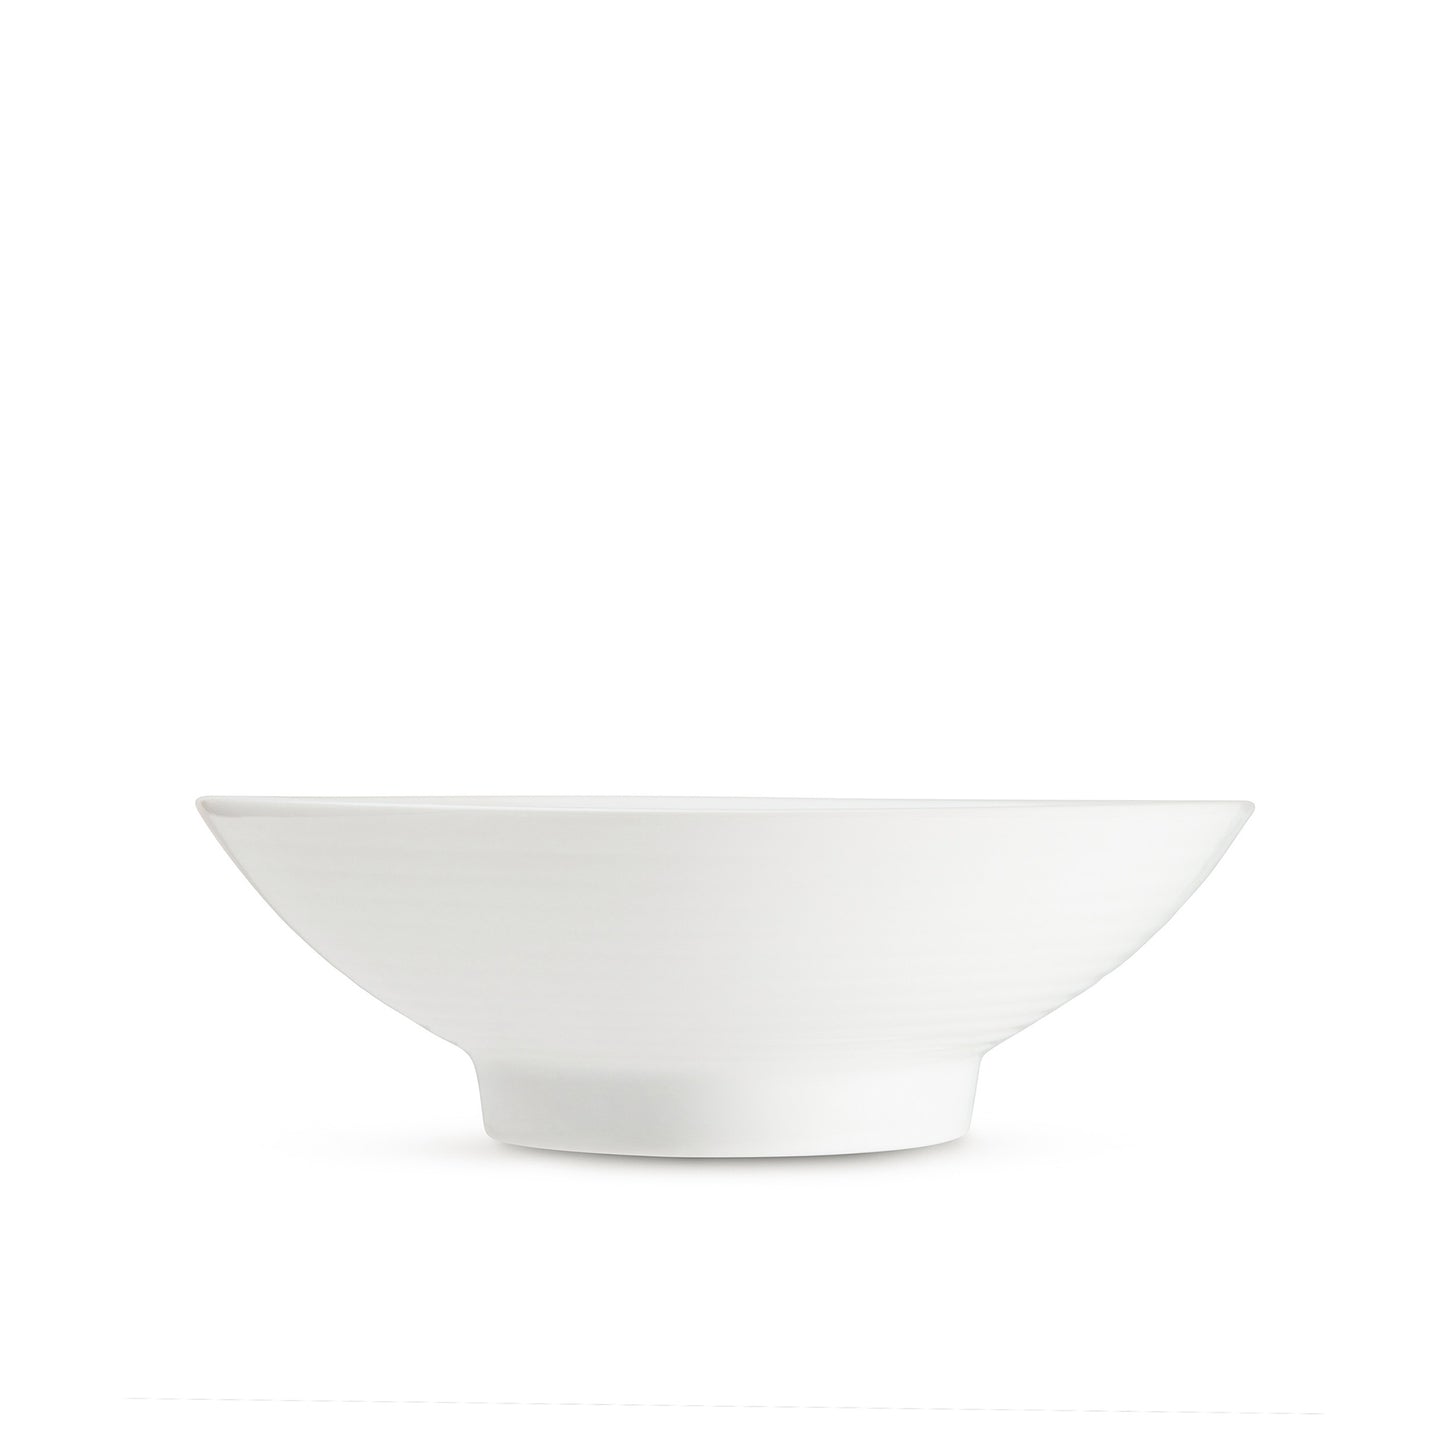 7" white porcelain bowl, horizontal view, media 4 of 4